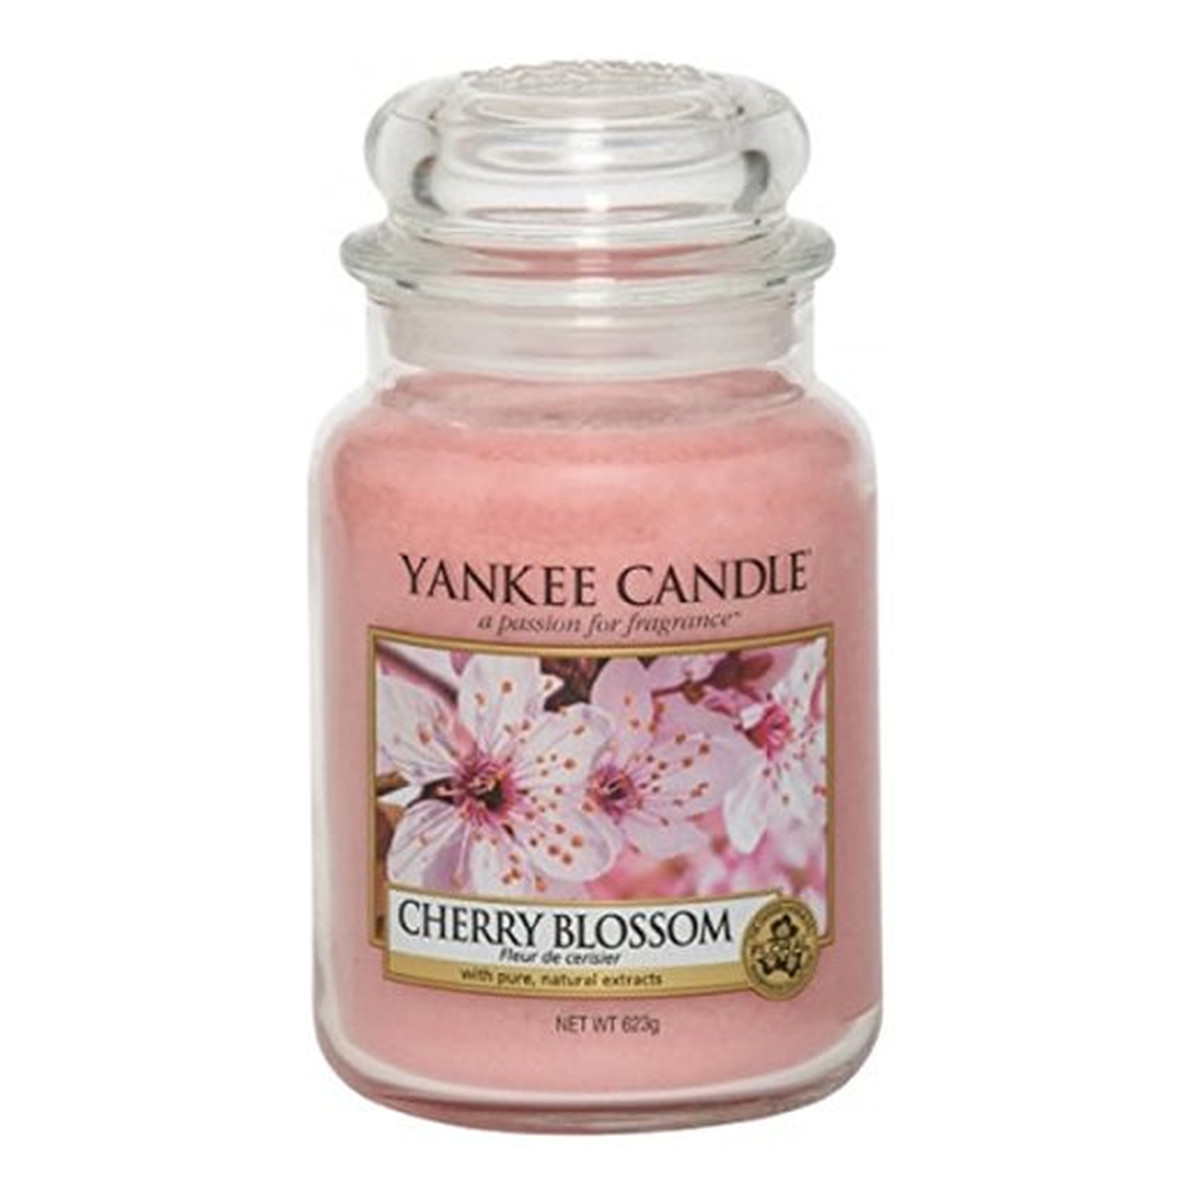 Yankee Candle Large Jar Duża świeczka zapachowa Cherry Blossom 623g